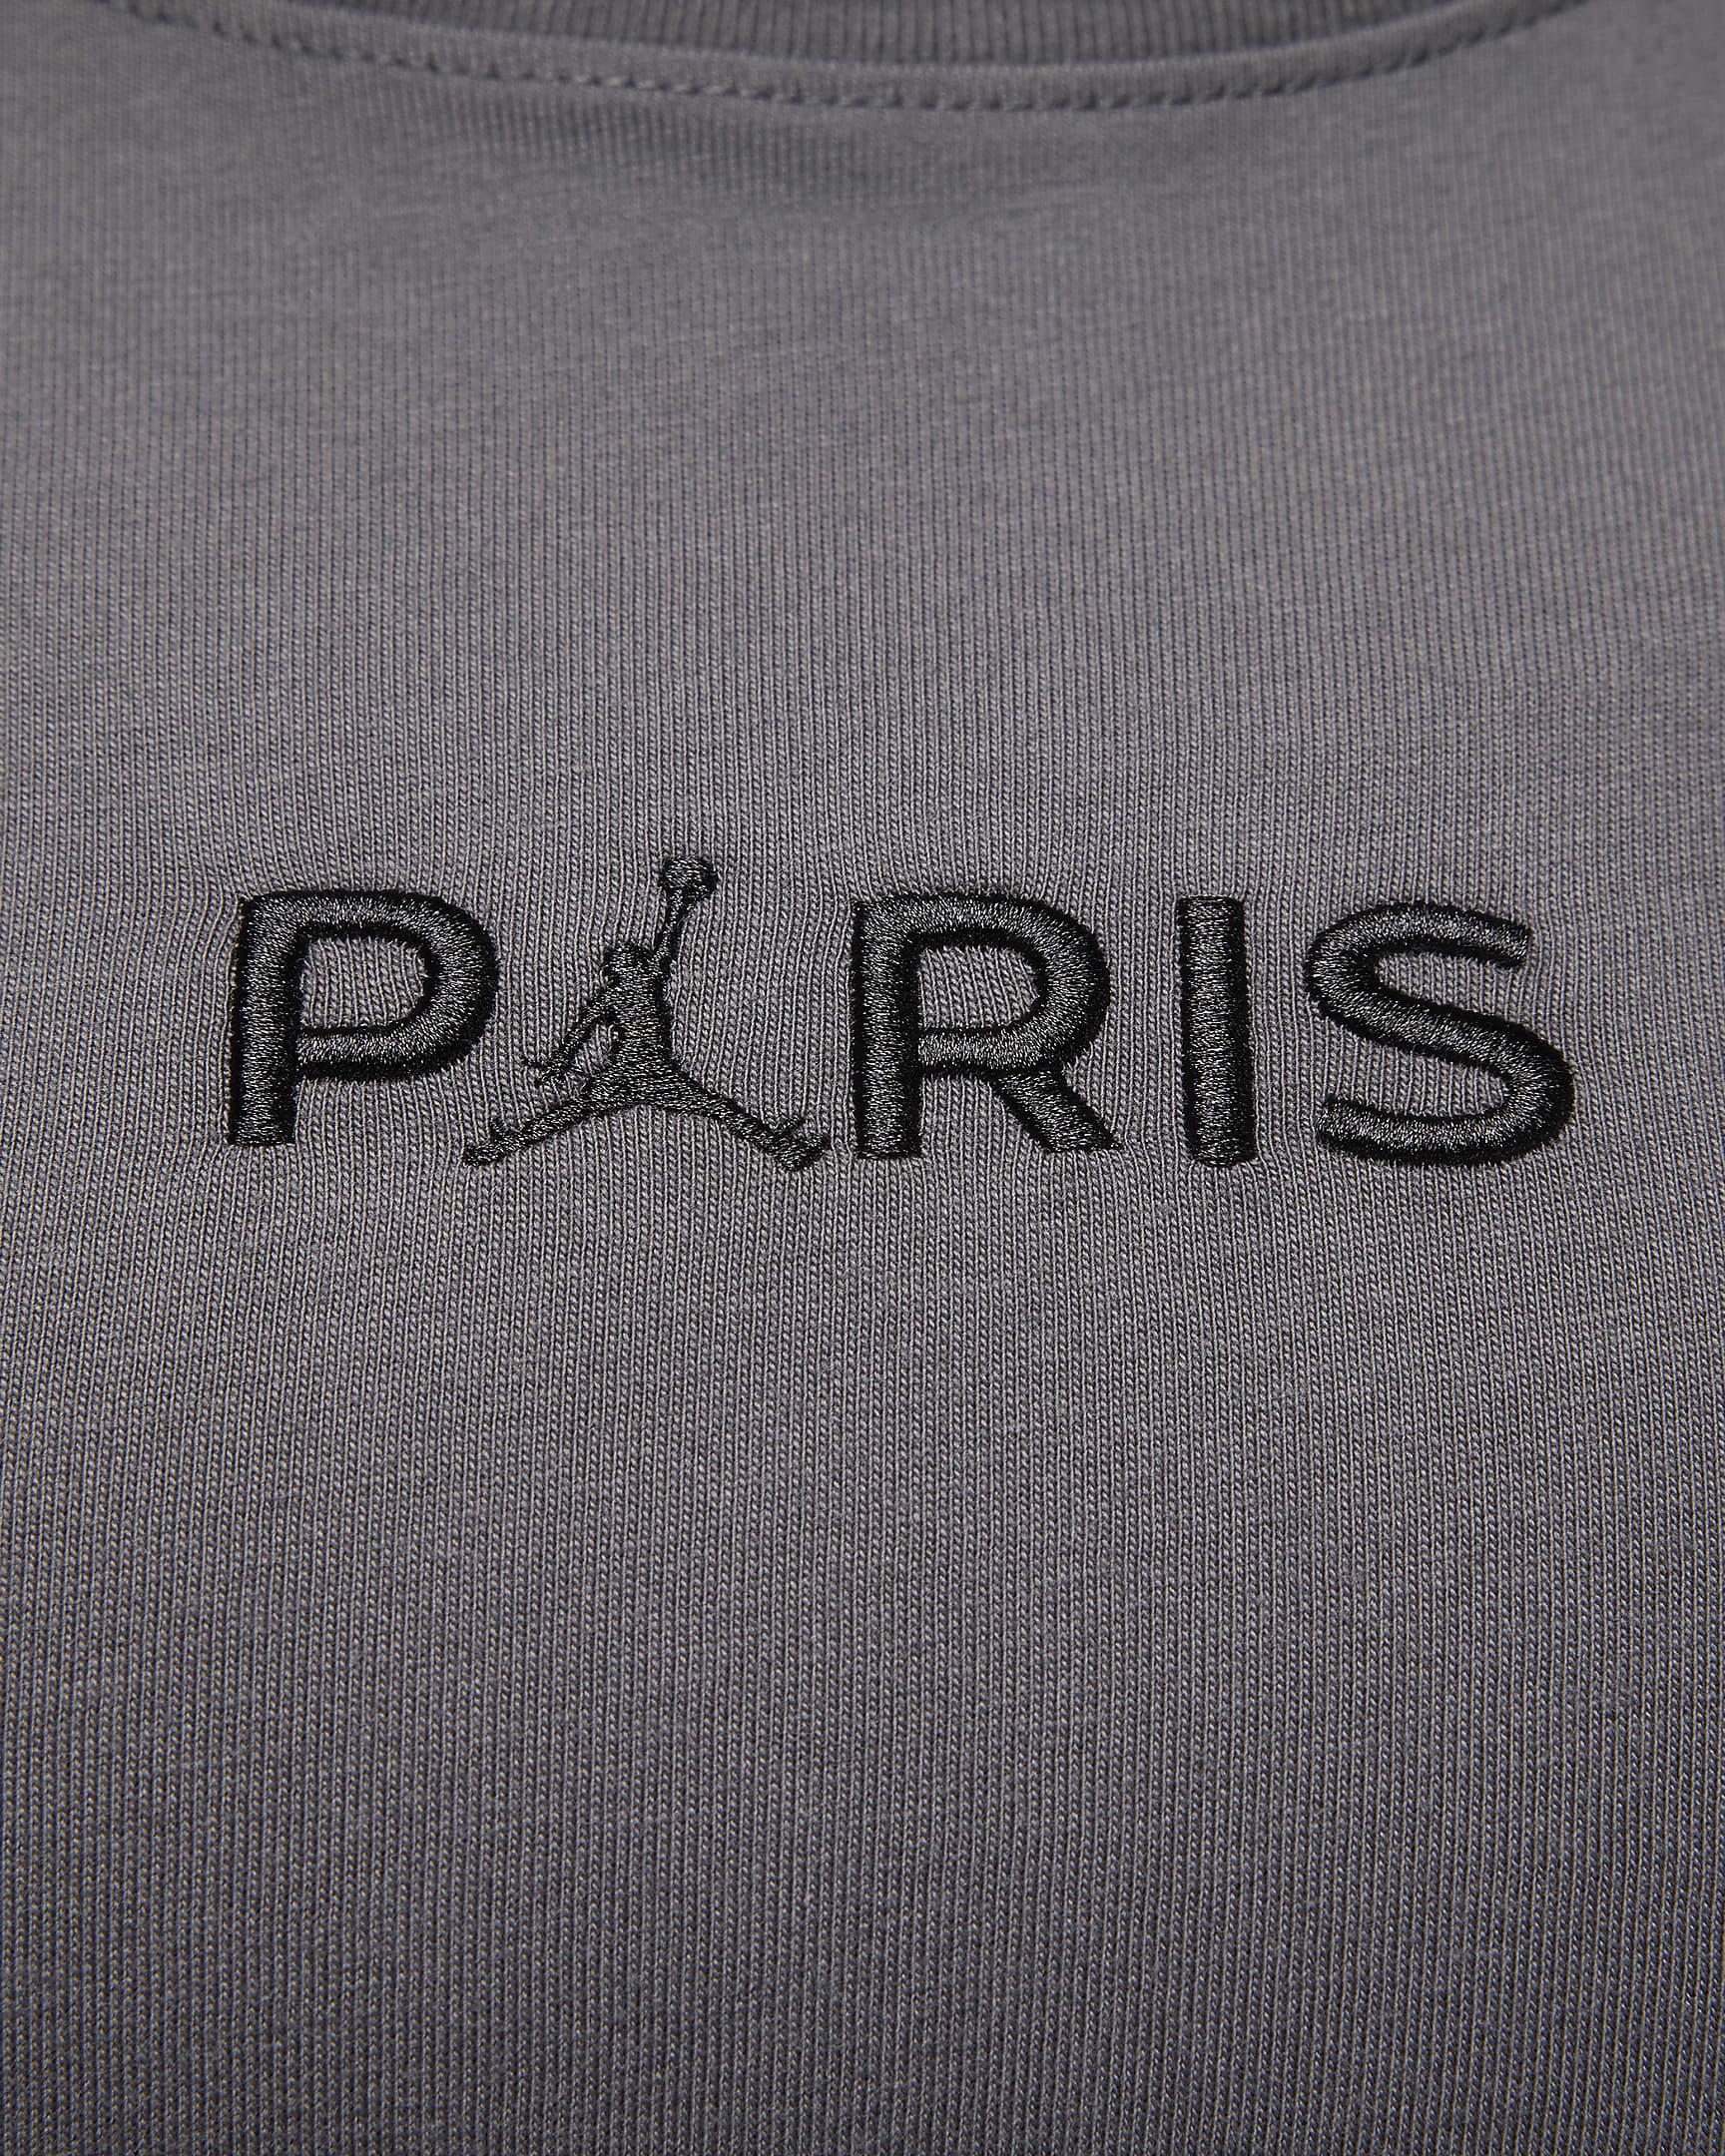 Paris Saint-Germain Women's T-Shirt. Nike UK